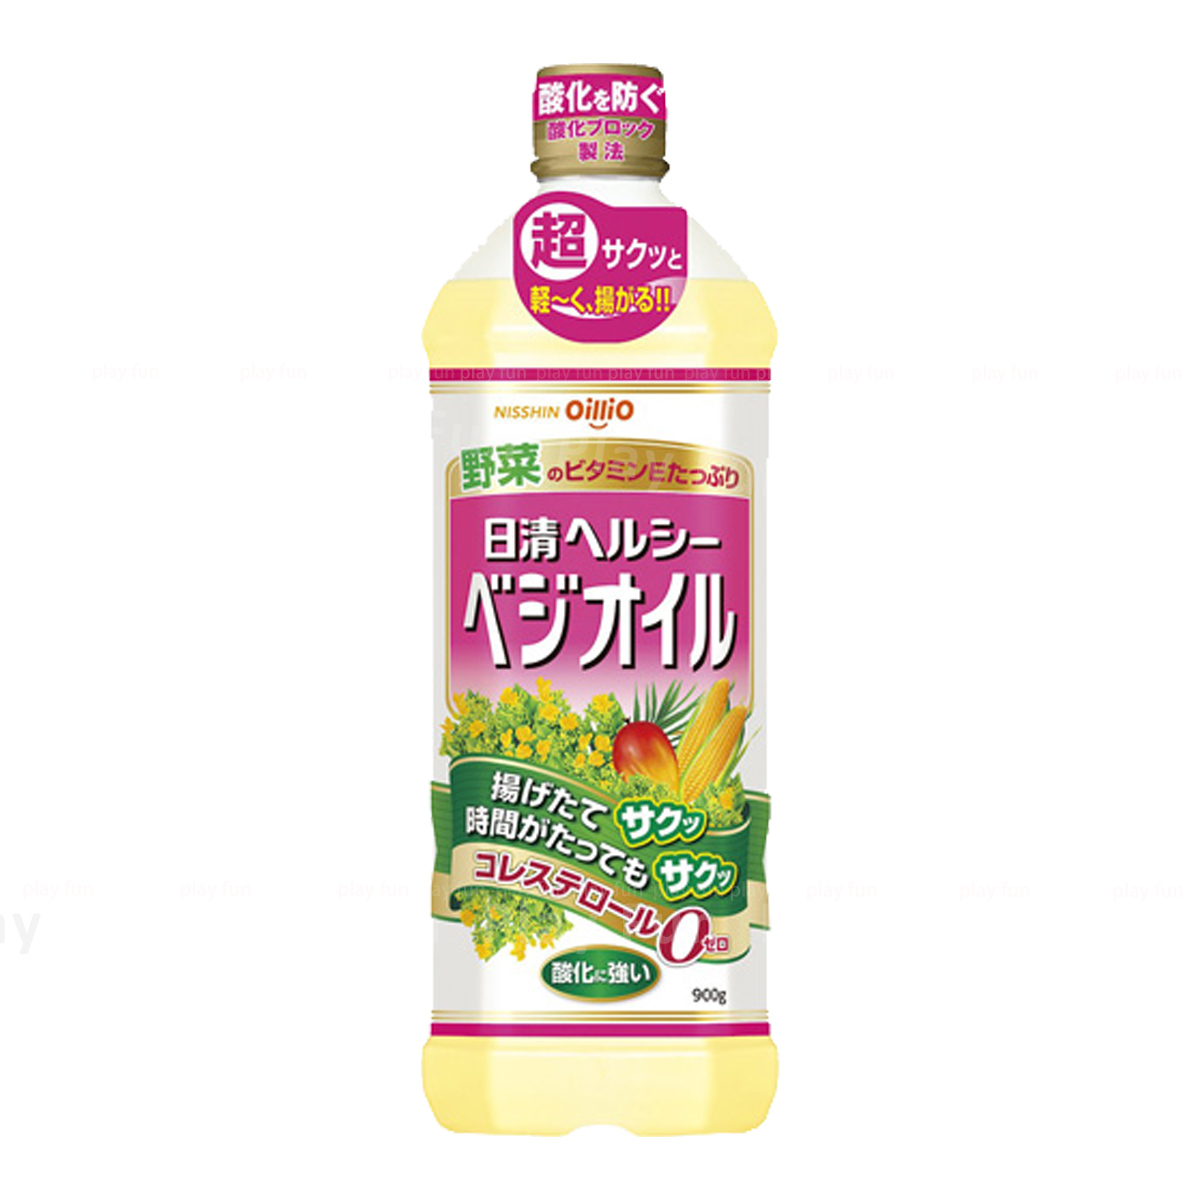 日清 - 健康野菜油